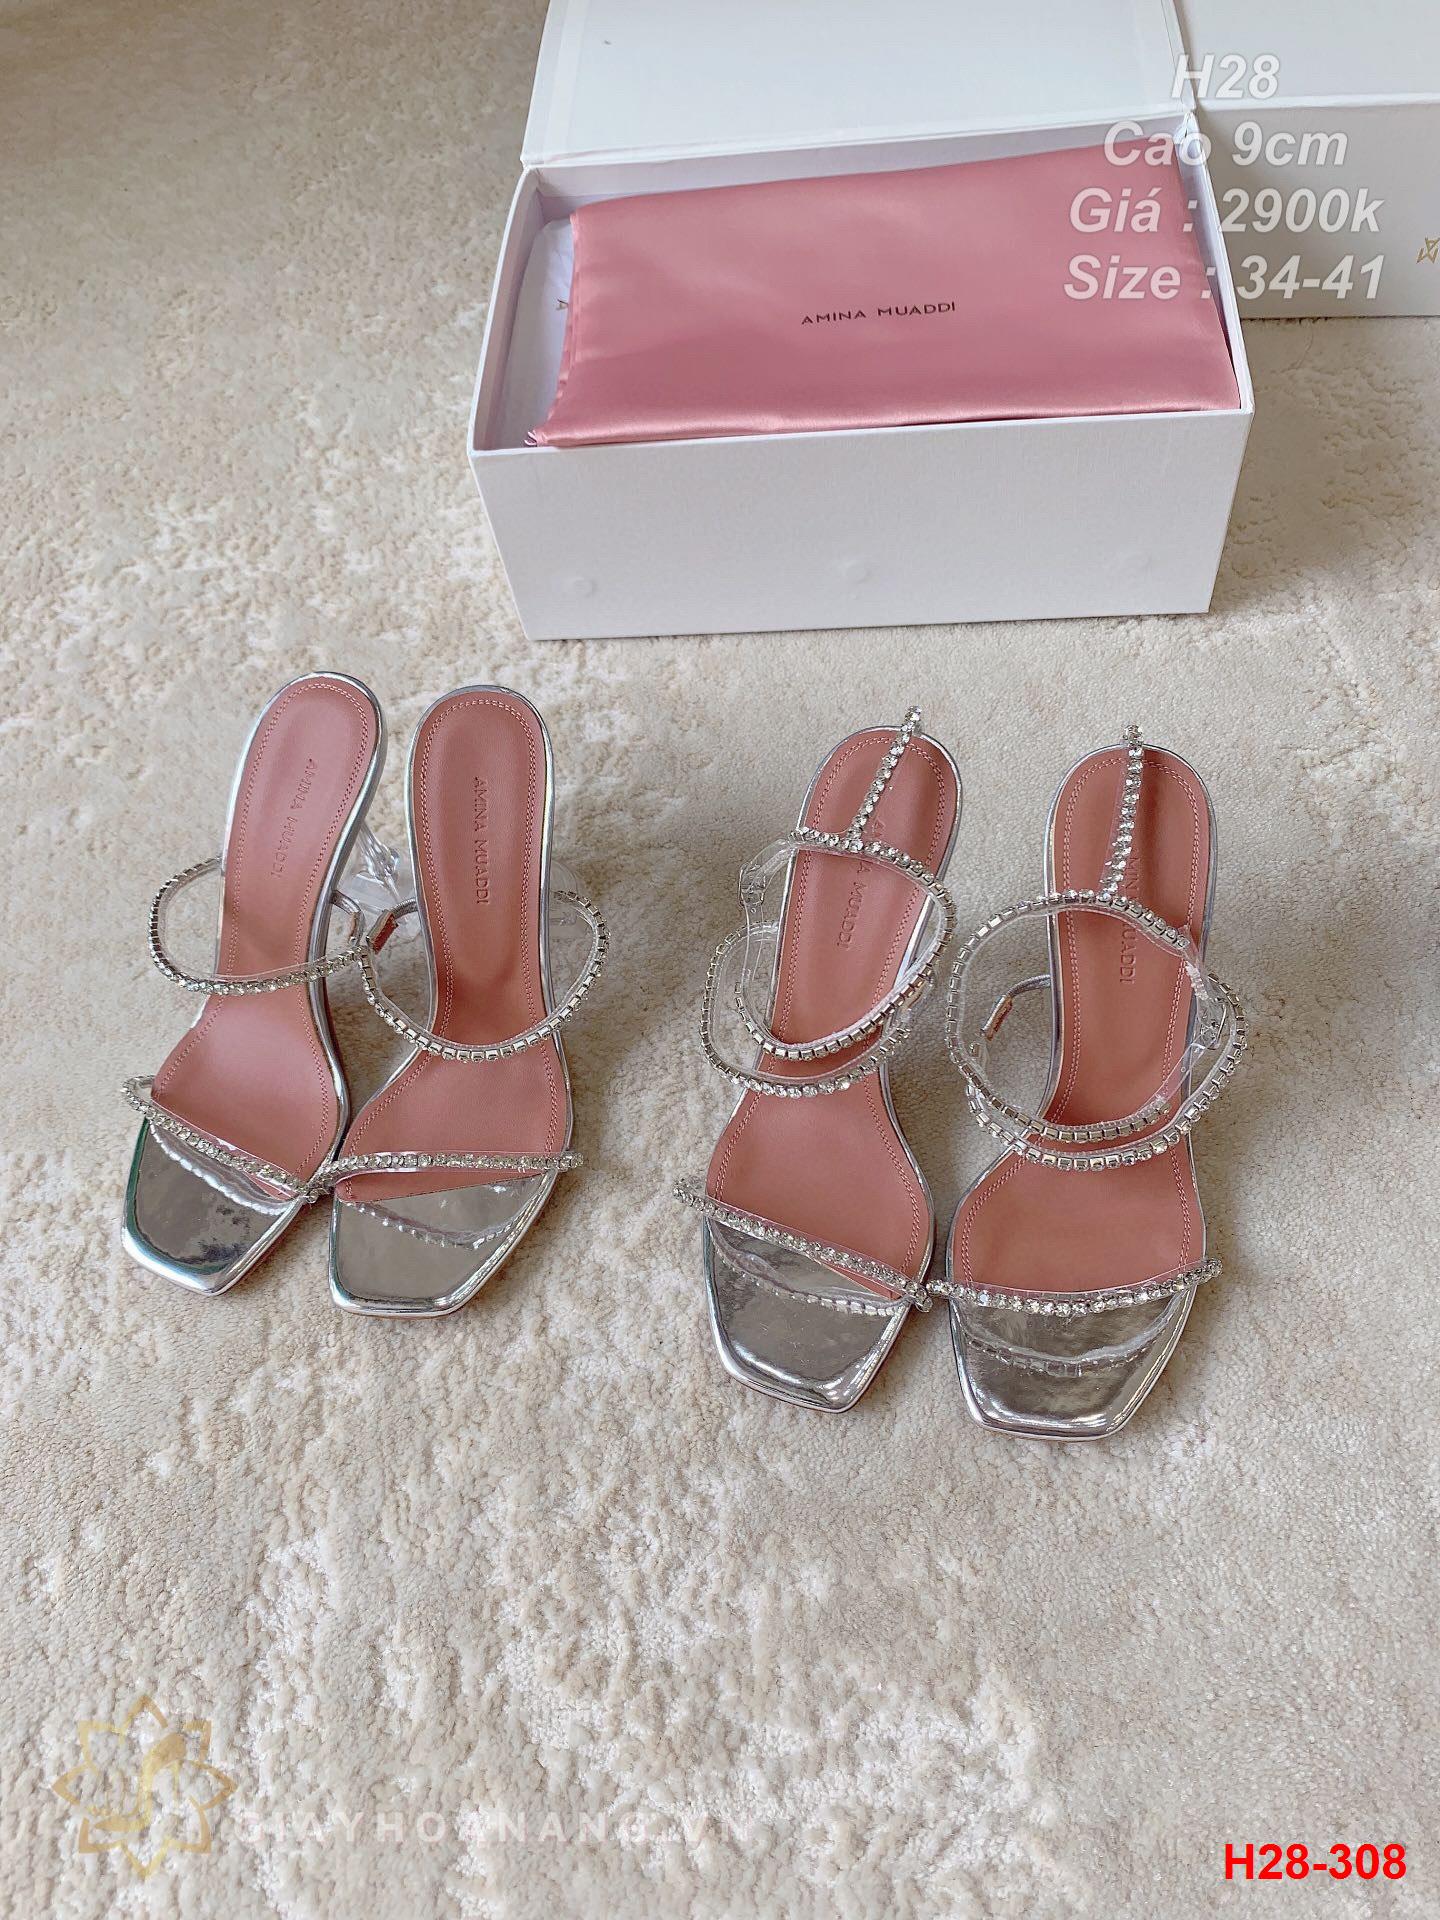 H28-308 Amina Muaddi sandal cao 9cm siêu cấp